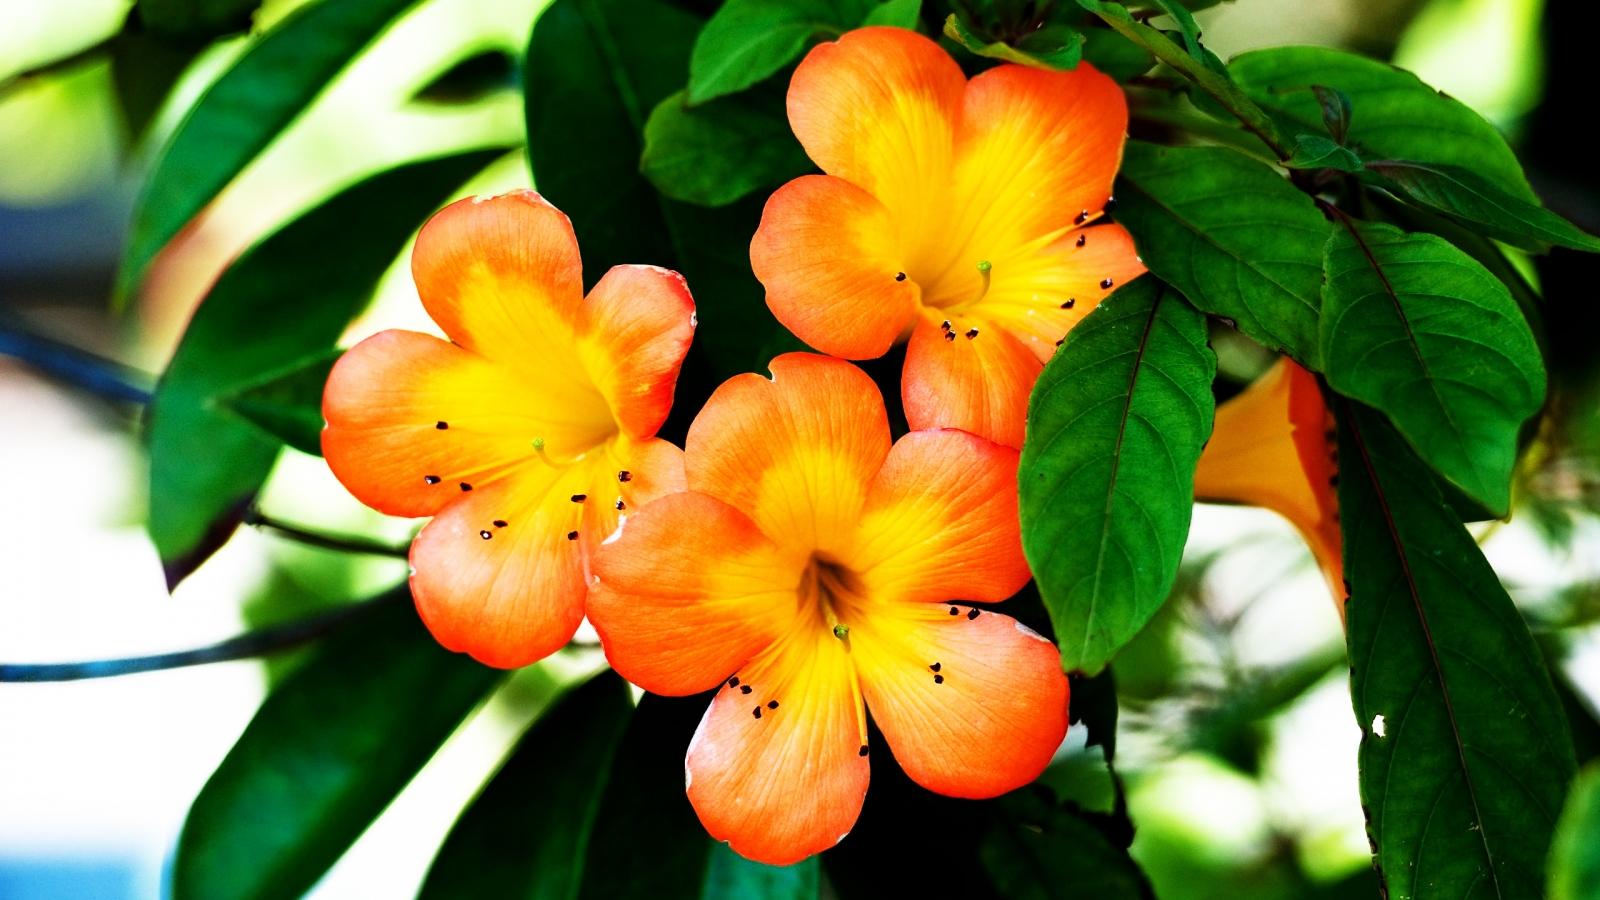 Spring Orange Flower for 1600 x 900 HDTV resolution